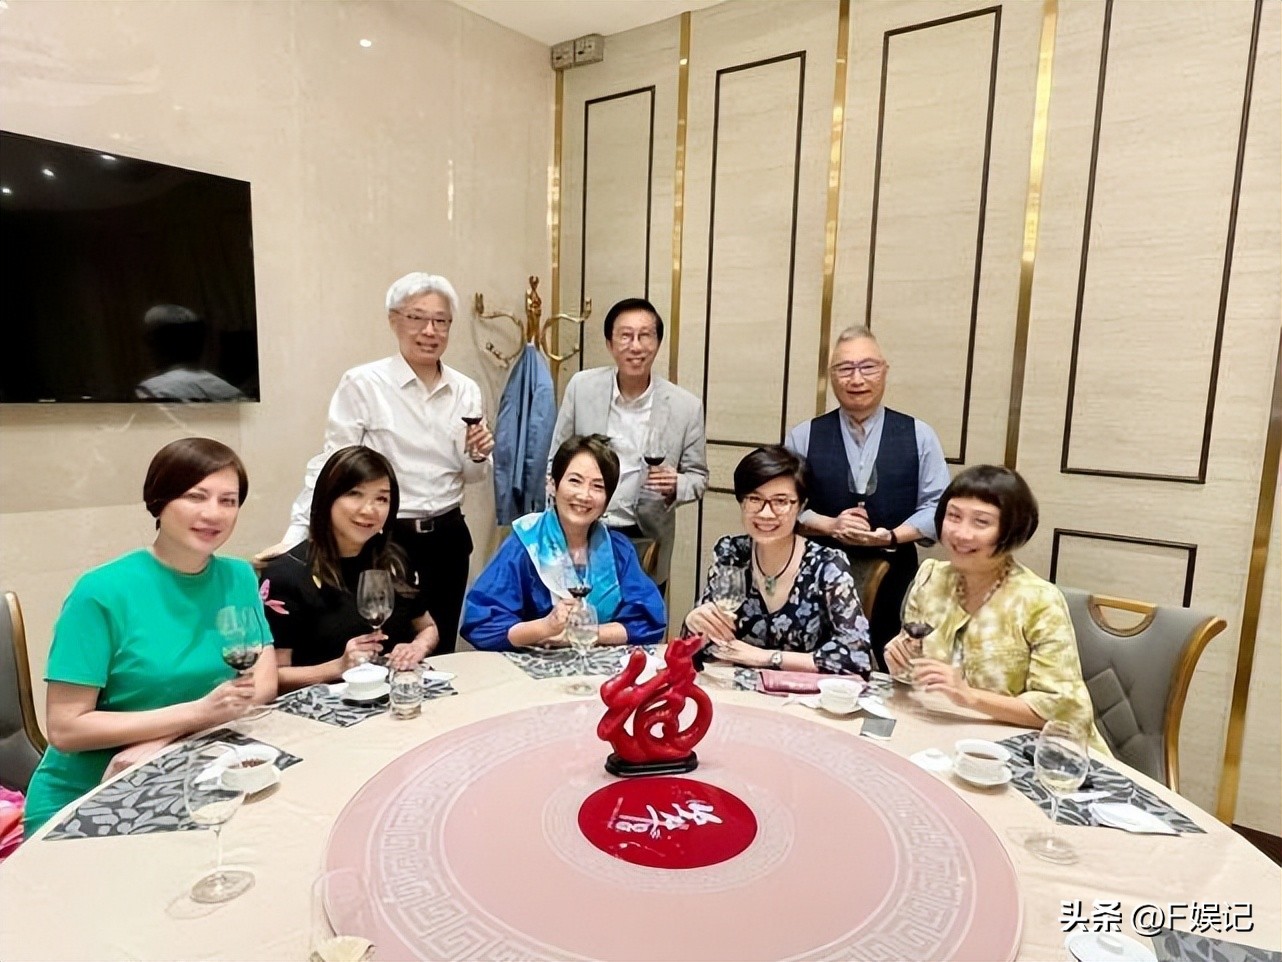 曾比特参加一个内地节目就红了 TVB高层曝其成大型饮食集团代言人